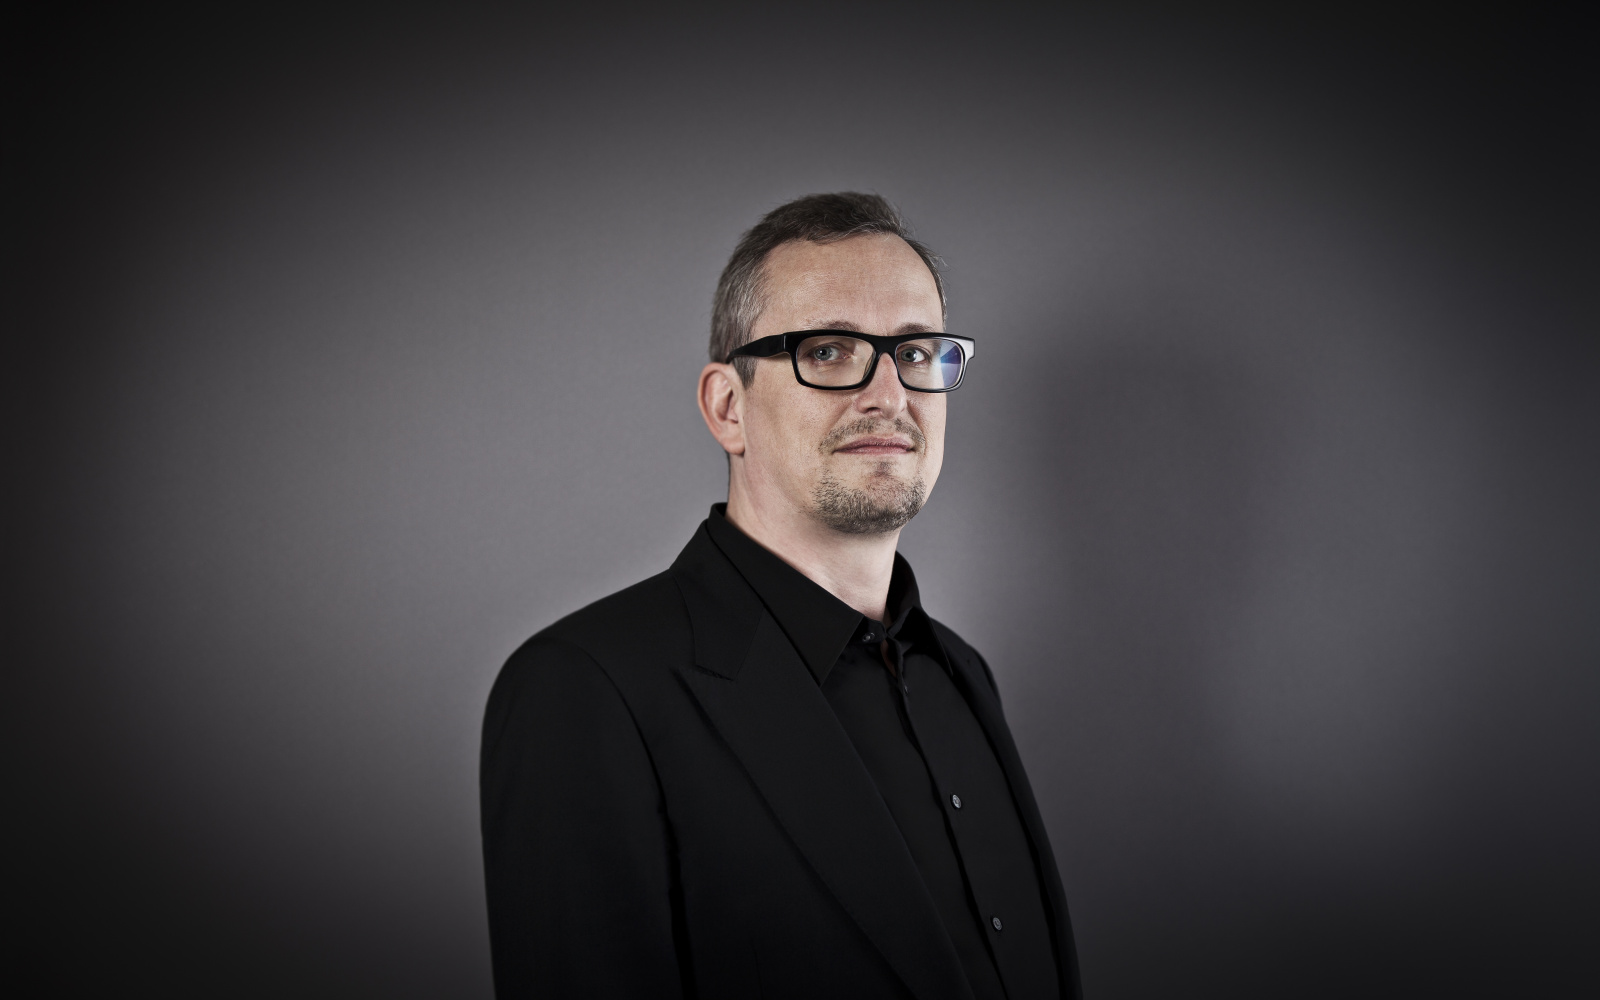 Portrait von Helmut Kinzler im schwarzen Hemd vor einem dunklen einfarbigen Hintergrund